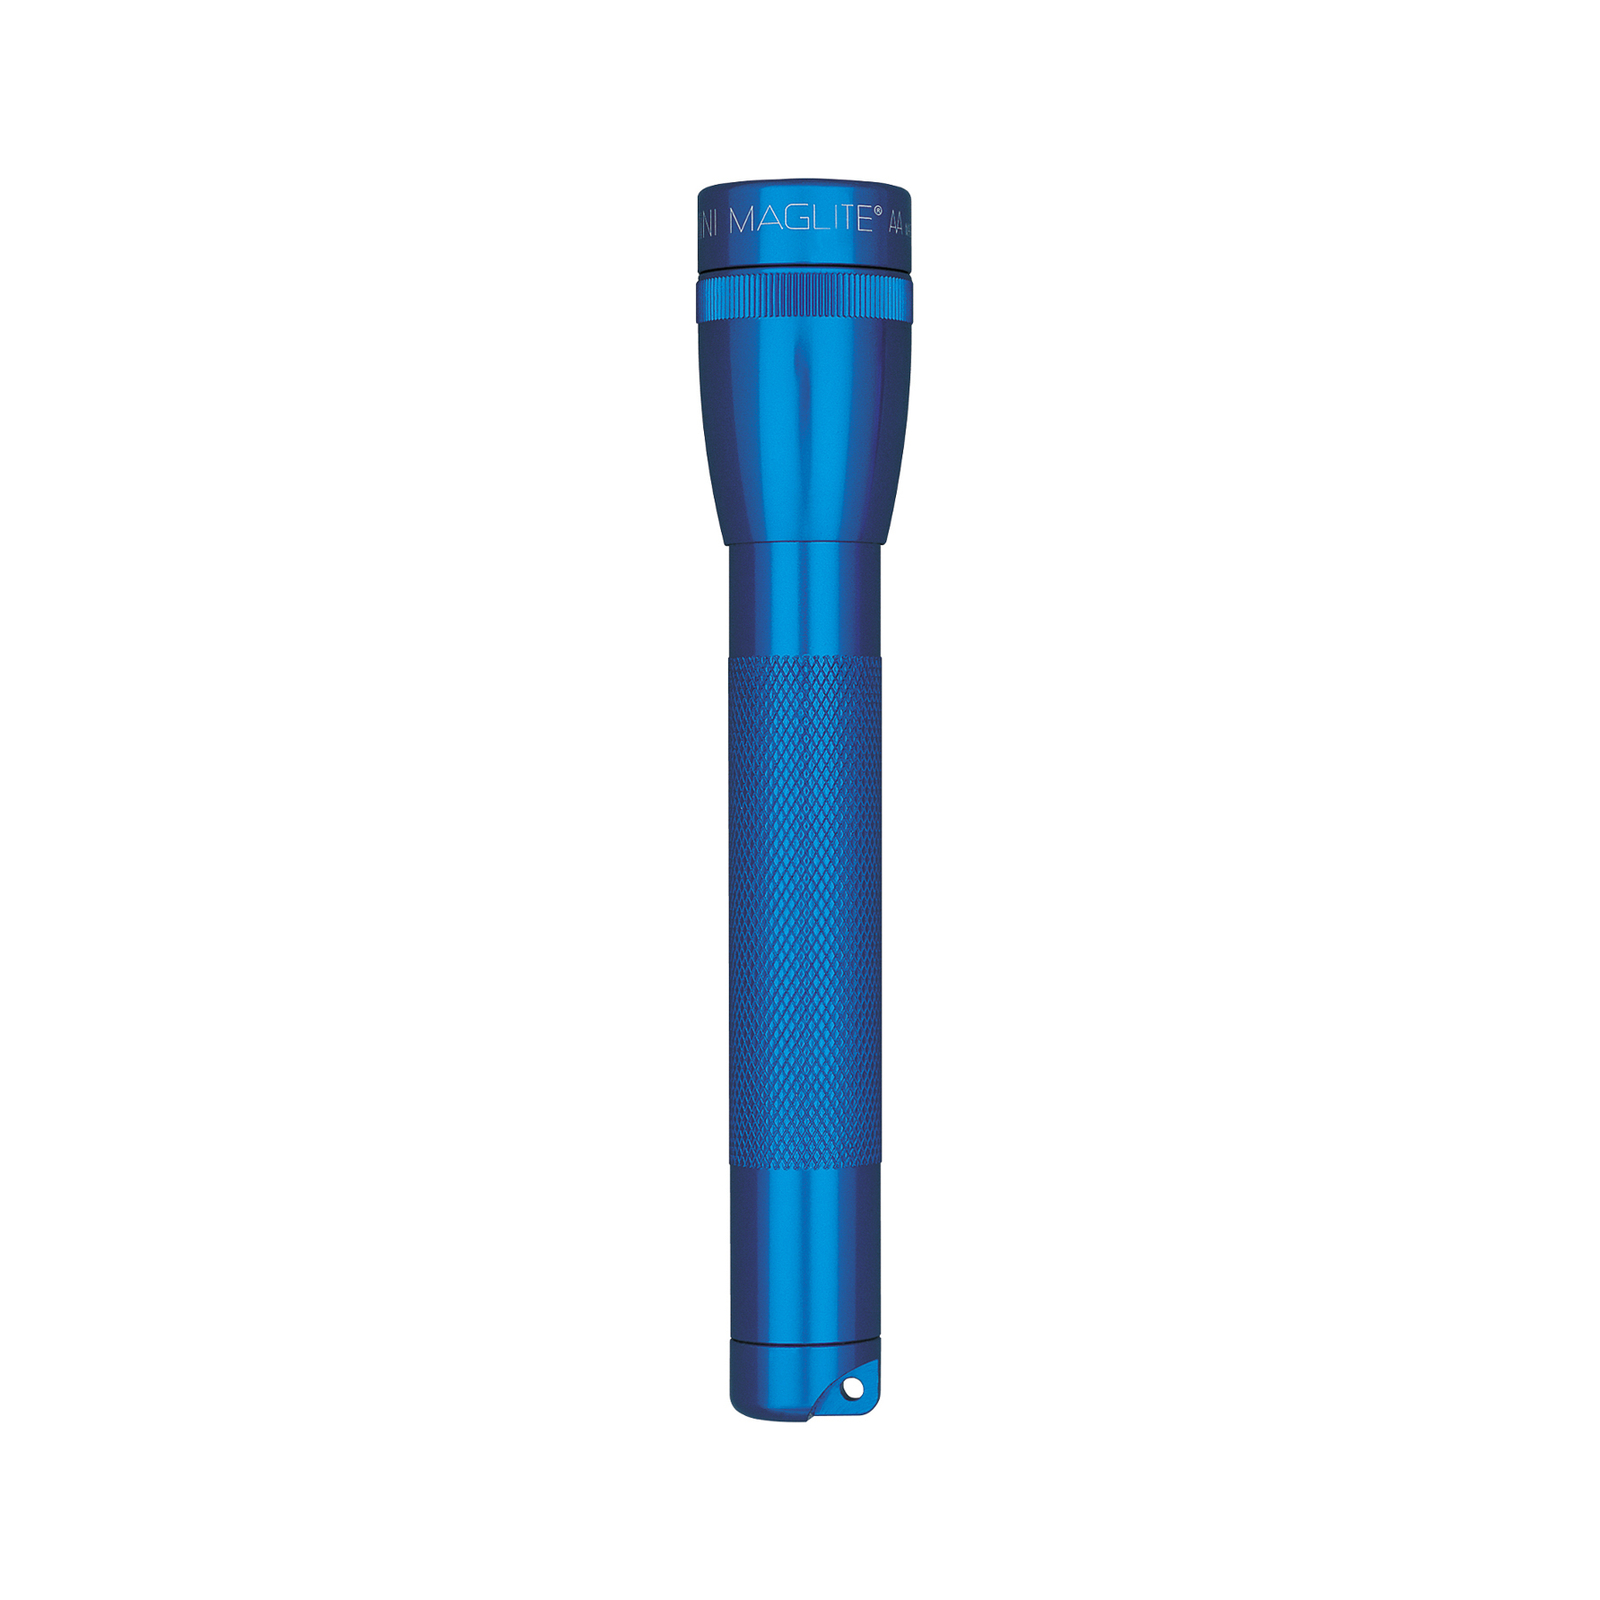 Maglite Xenon-lommelykt Mini, 2-cell AA, blå